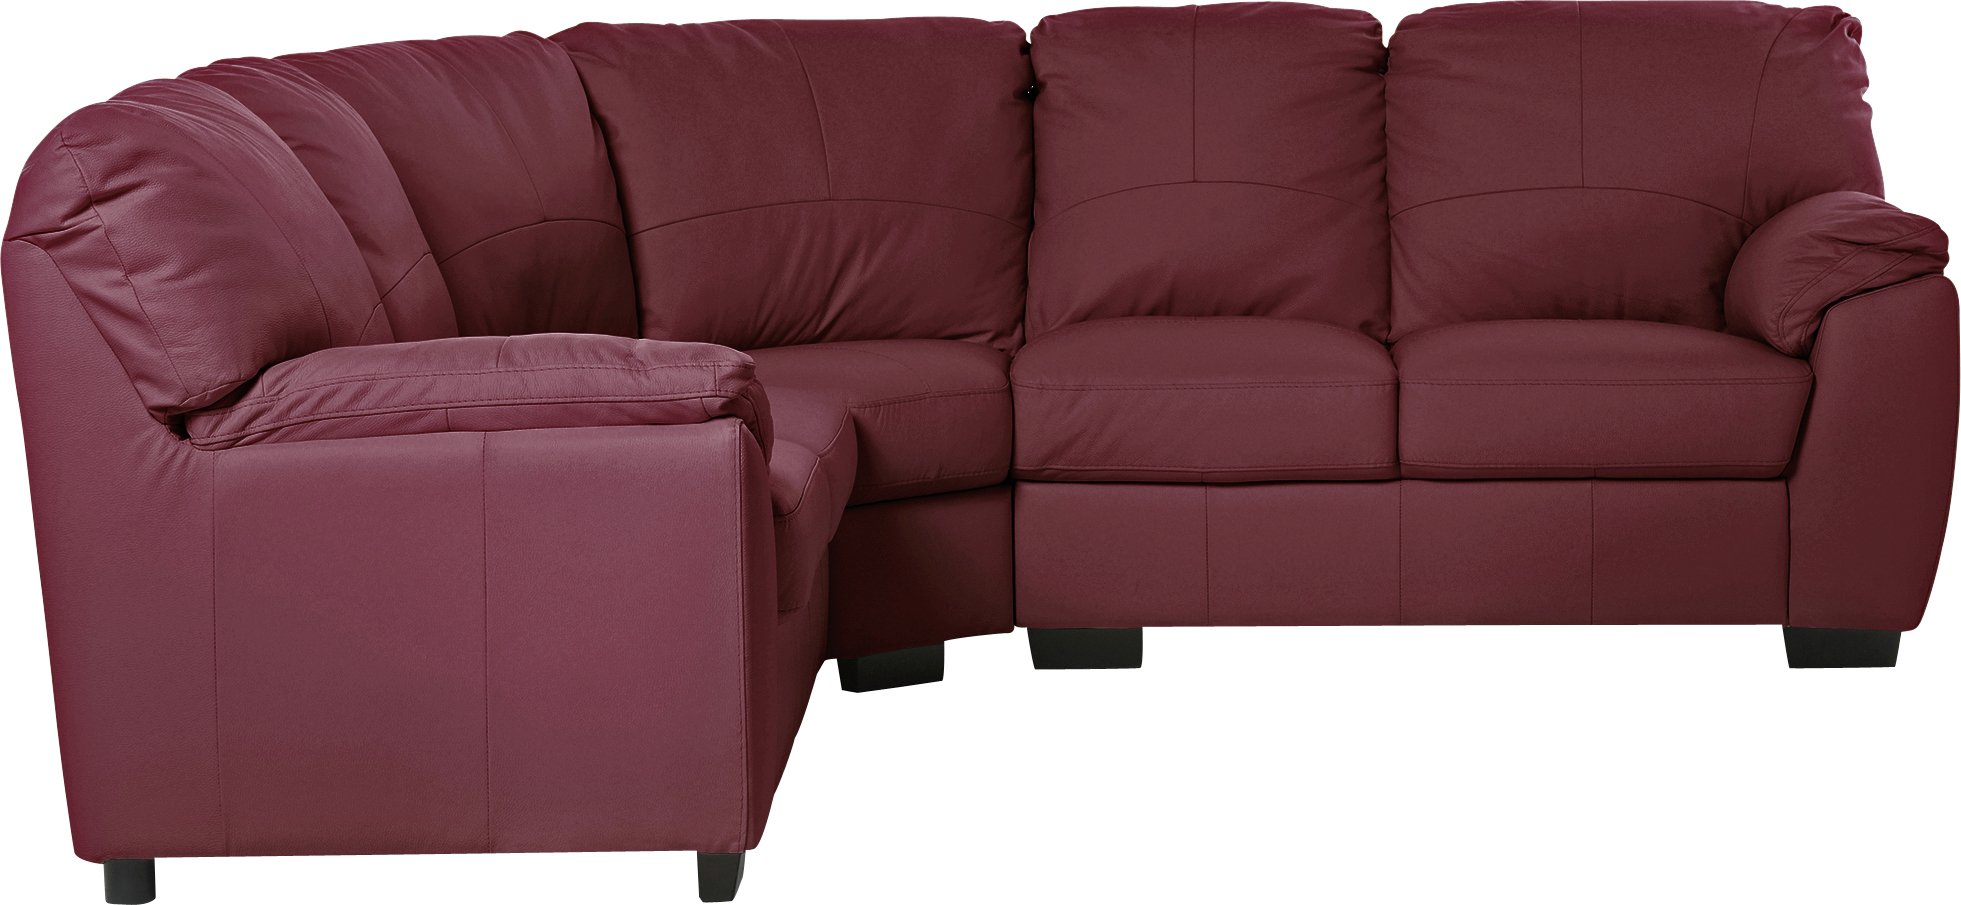 argos leather corner sofa